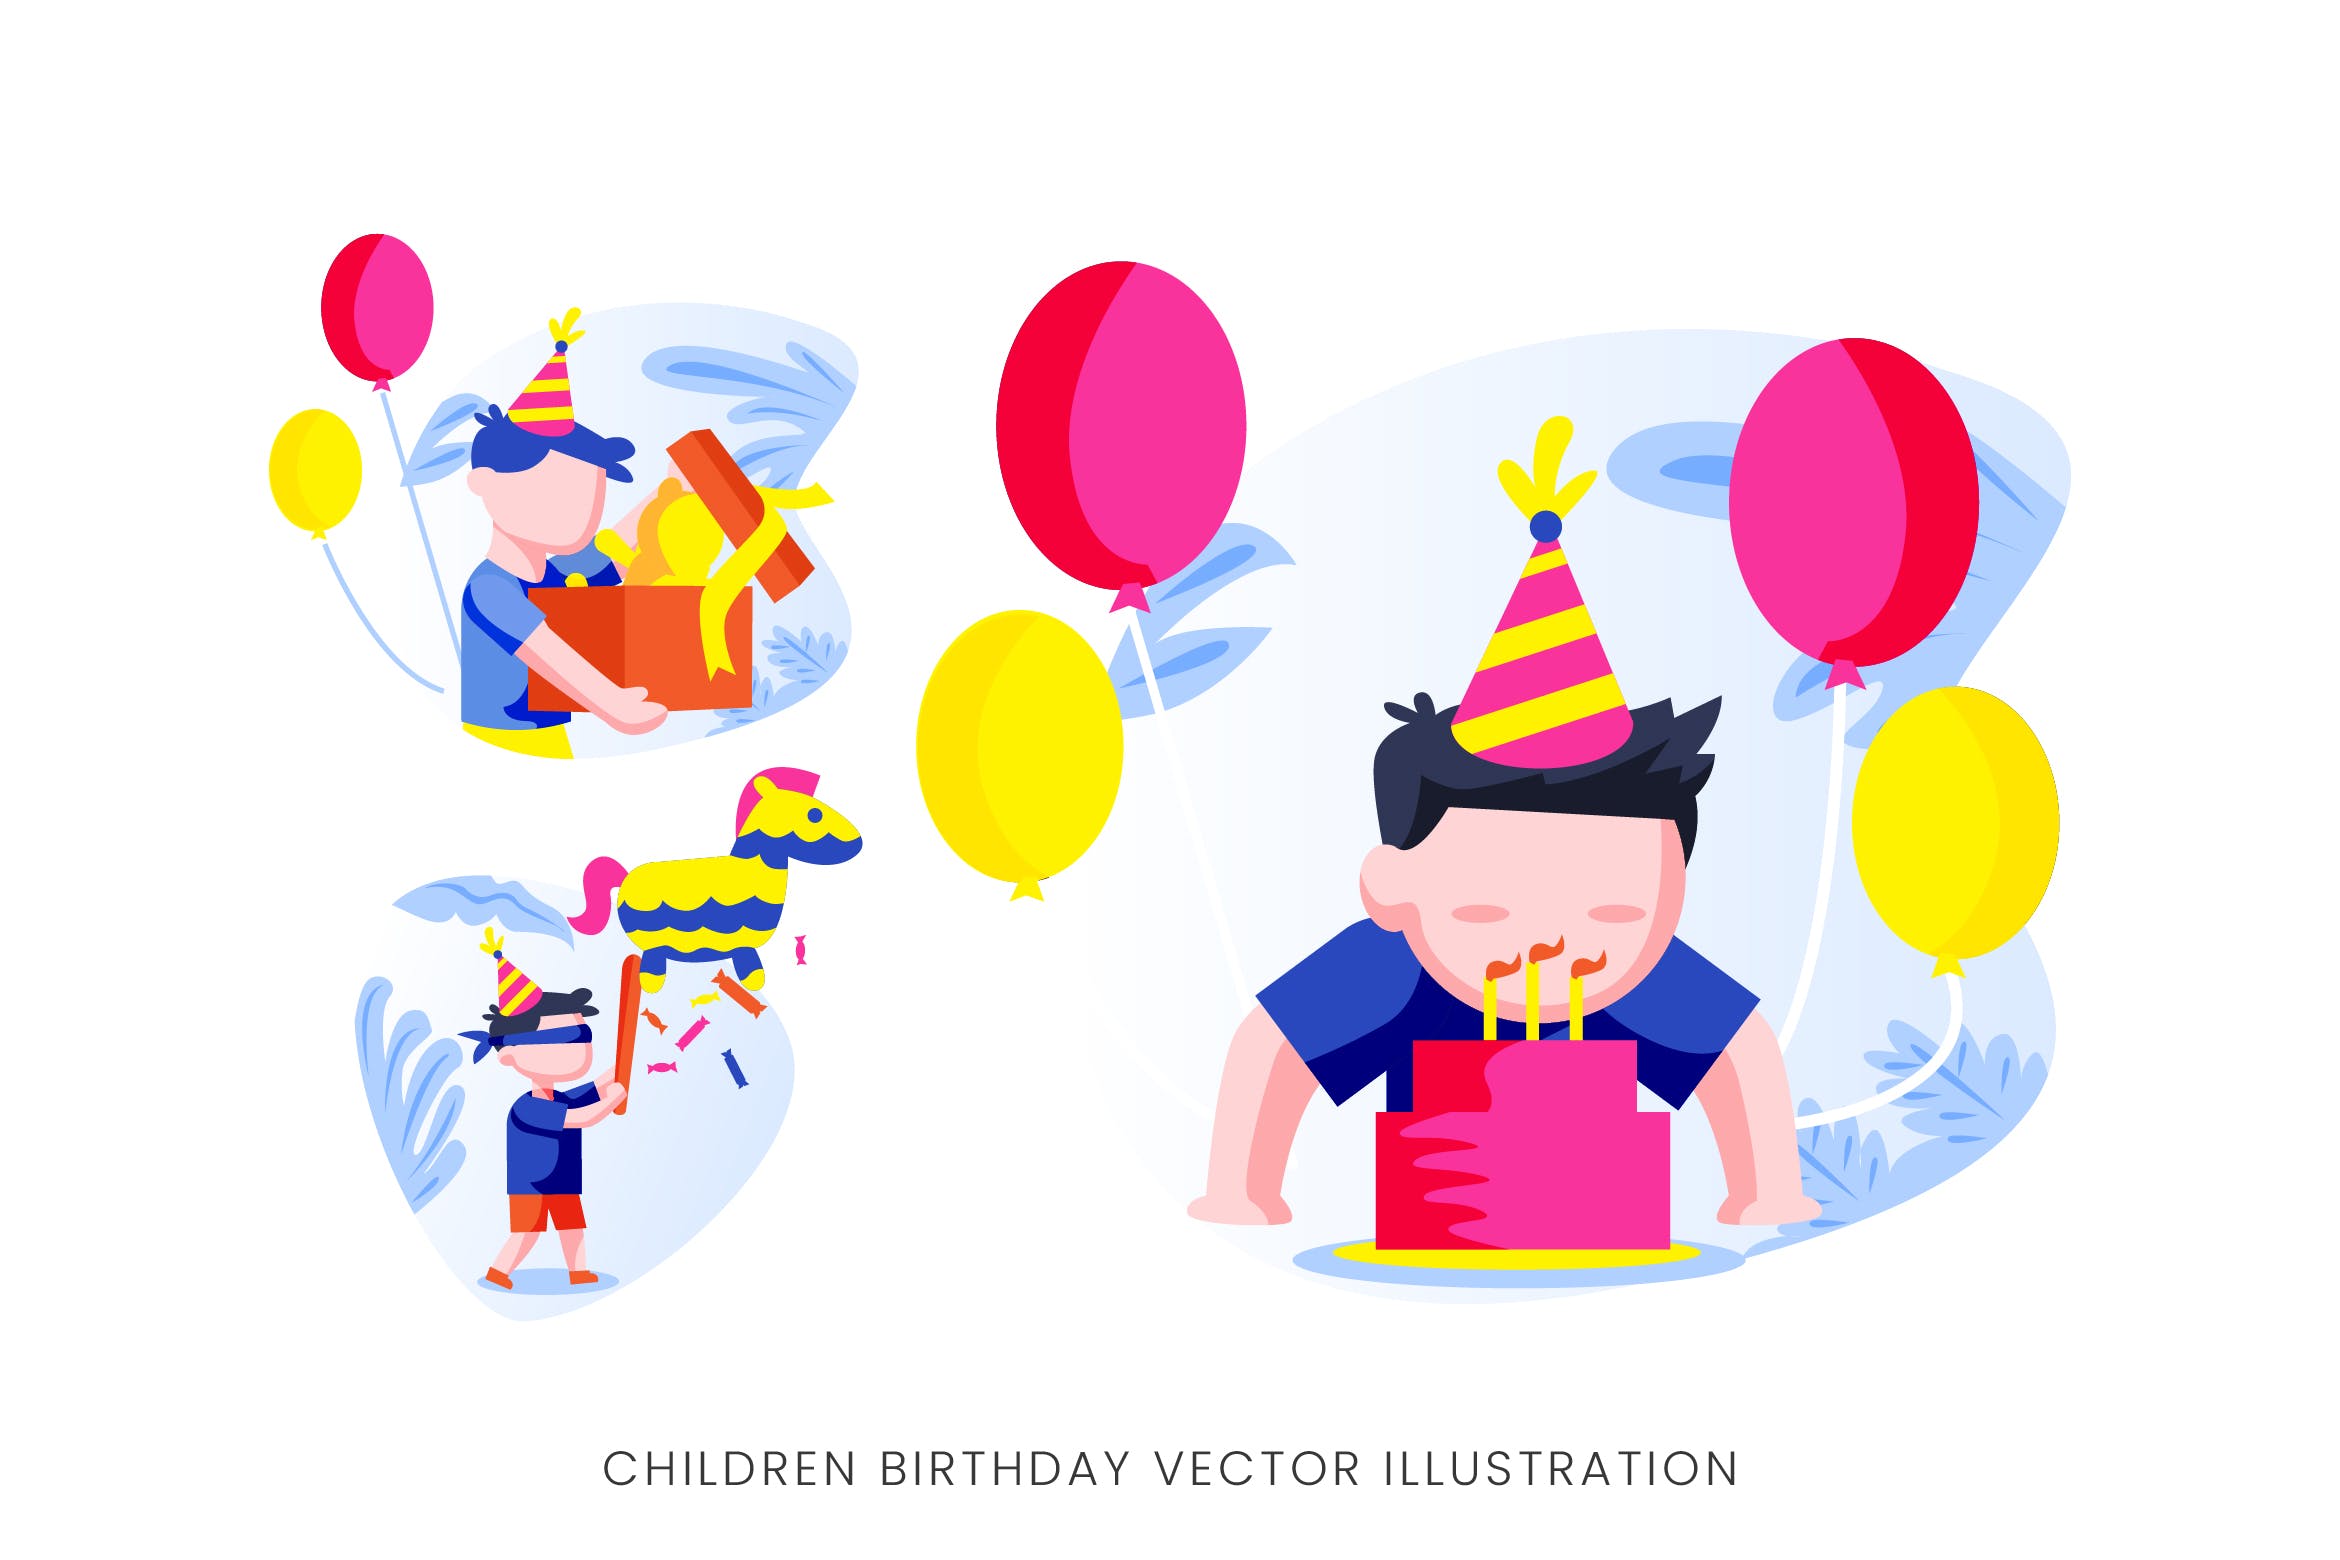 儿童生日派对人物形象素材库精选手绘插画矢量素材 Children Birthday Party Vector Character Set插图